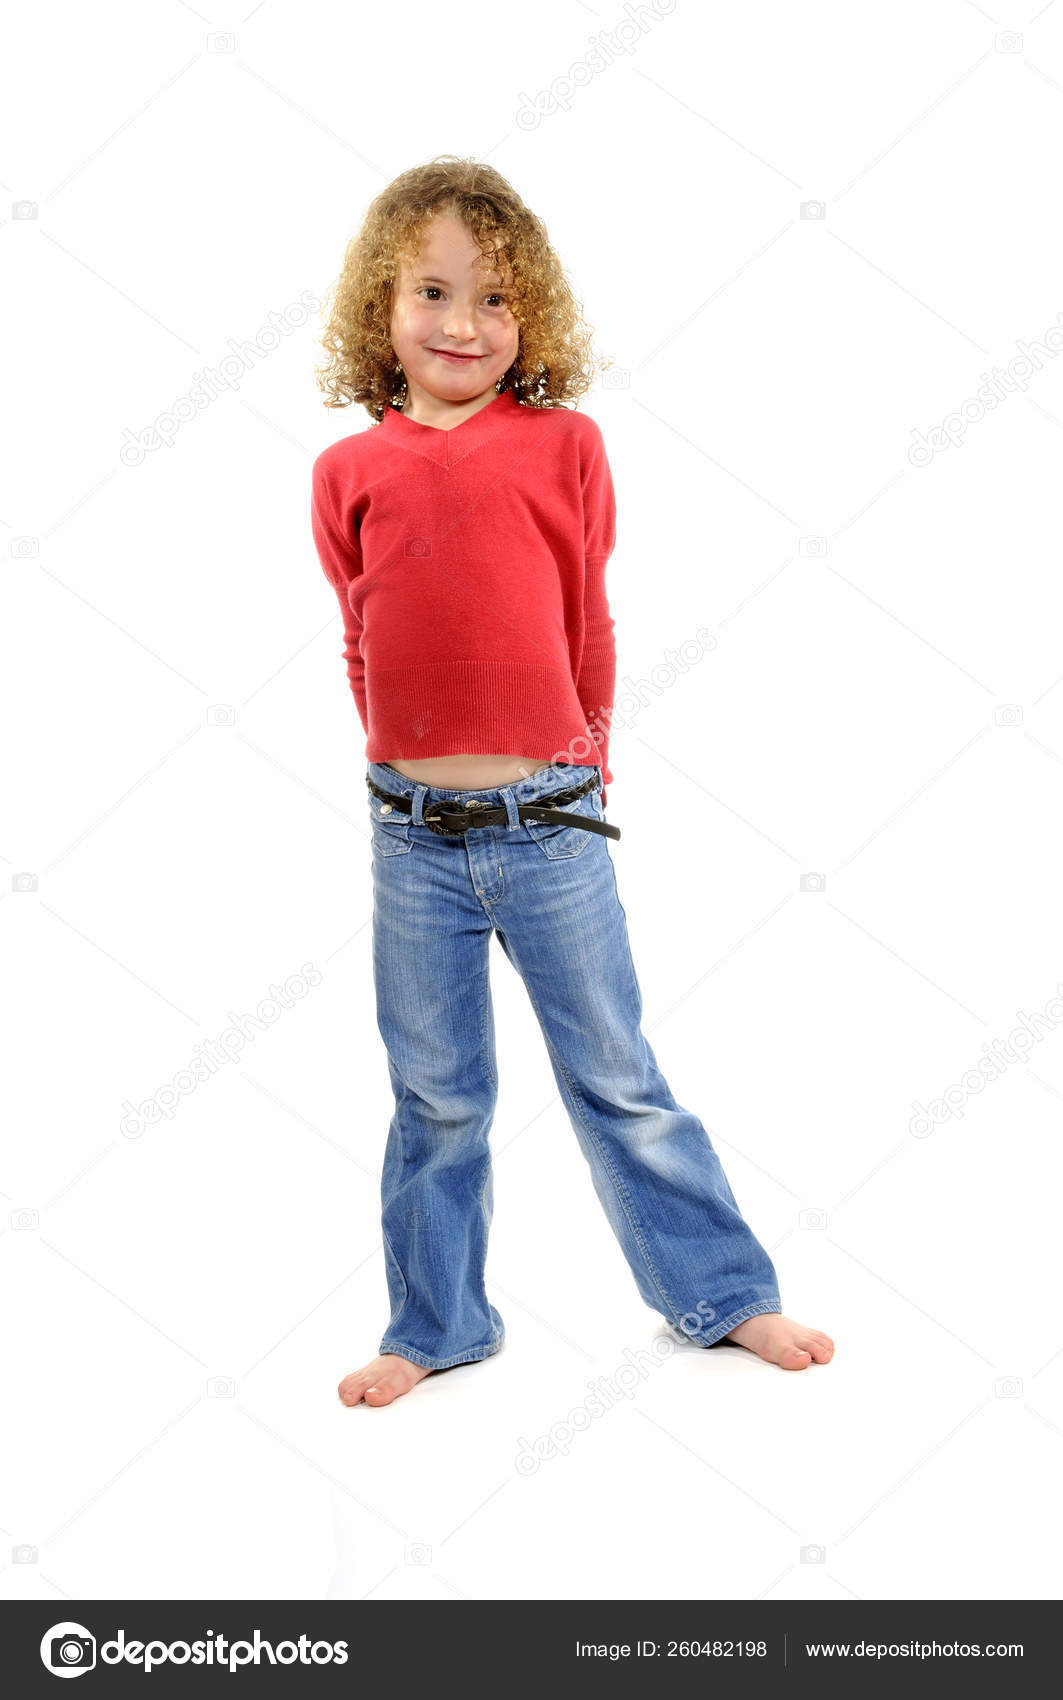 Red Denim Jeans - Little Girl